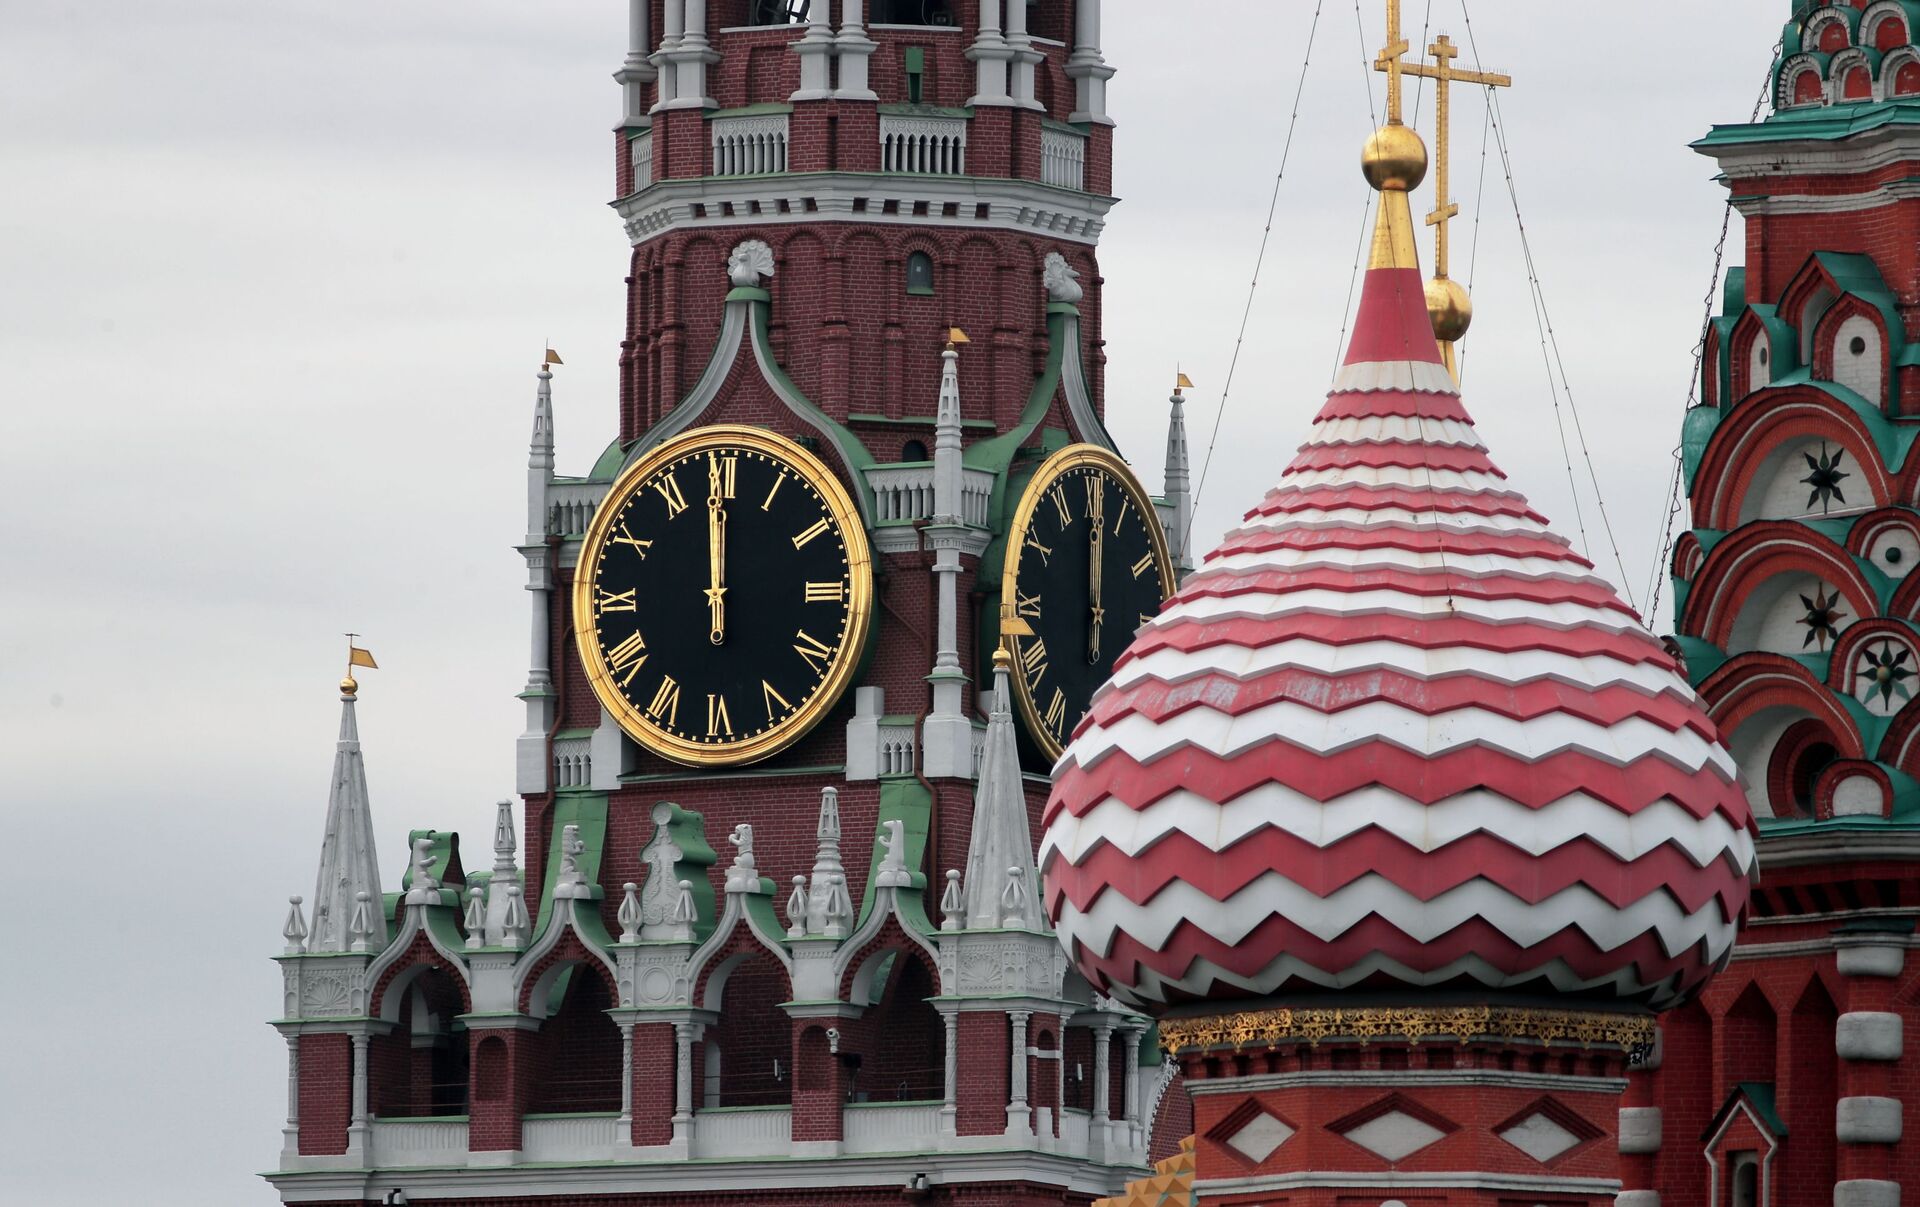 Кремлевские куранты на спасской башне